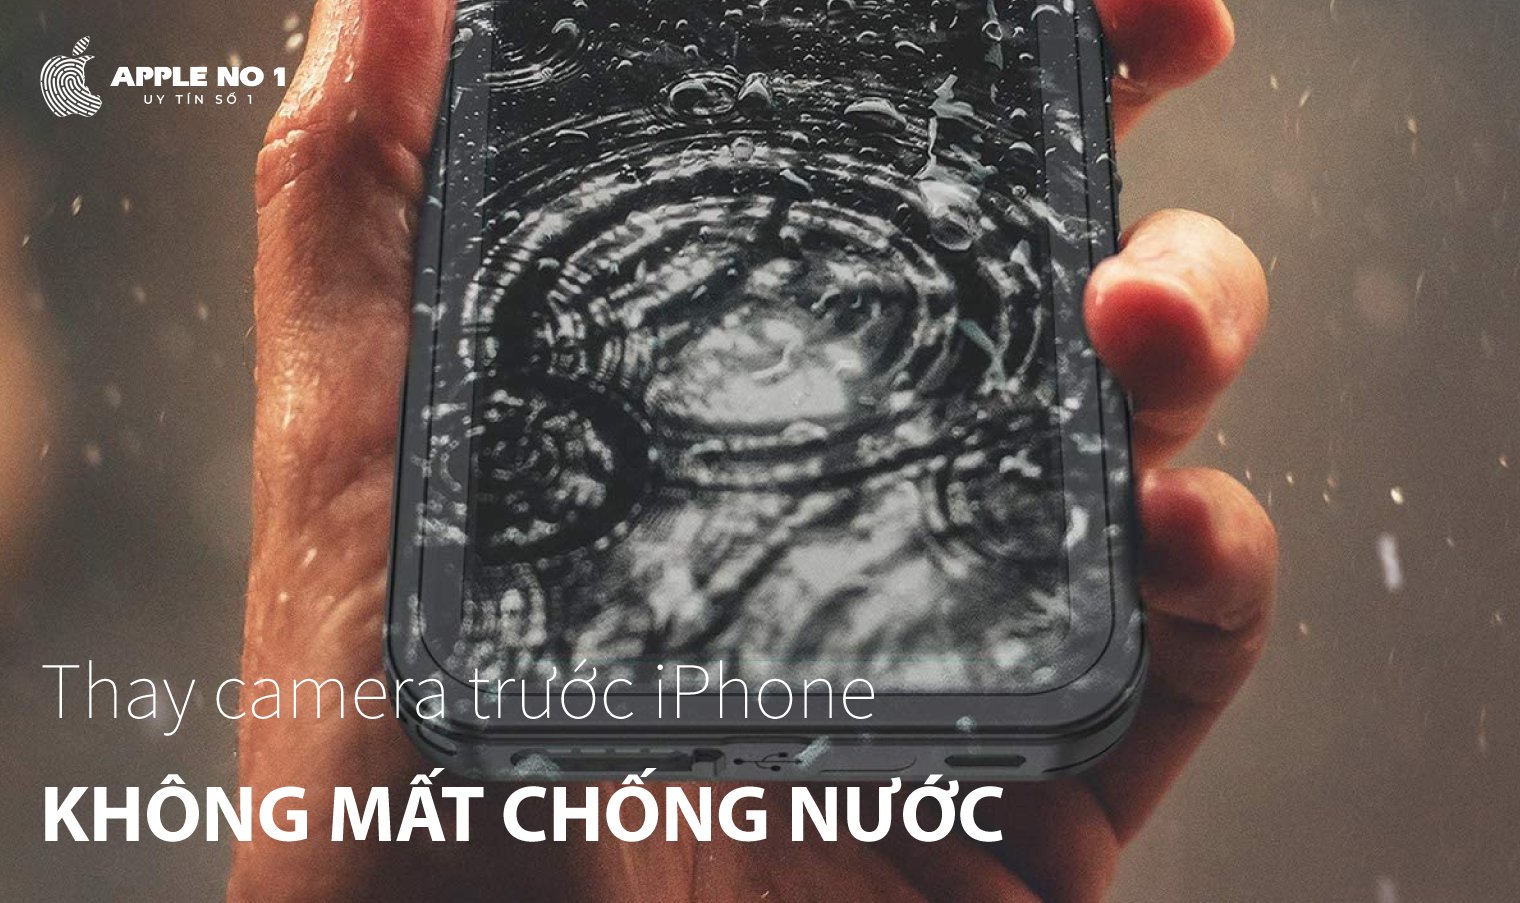 thay camera truoc iphone 12 pro max co mat chong nuoc khong?